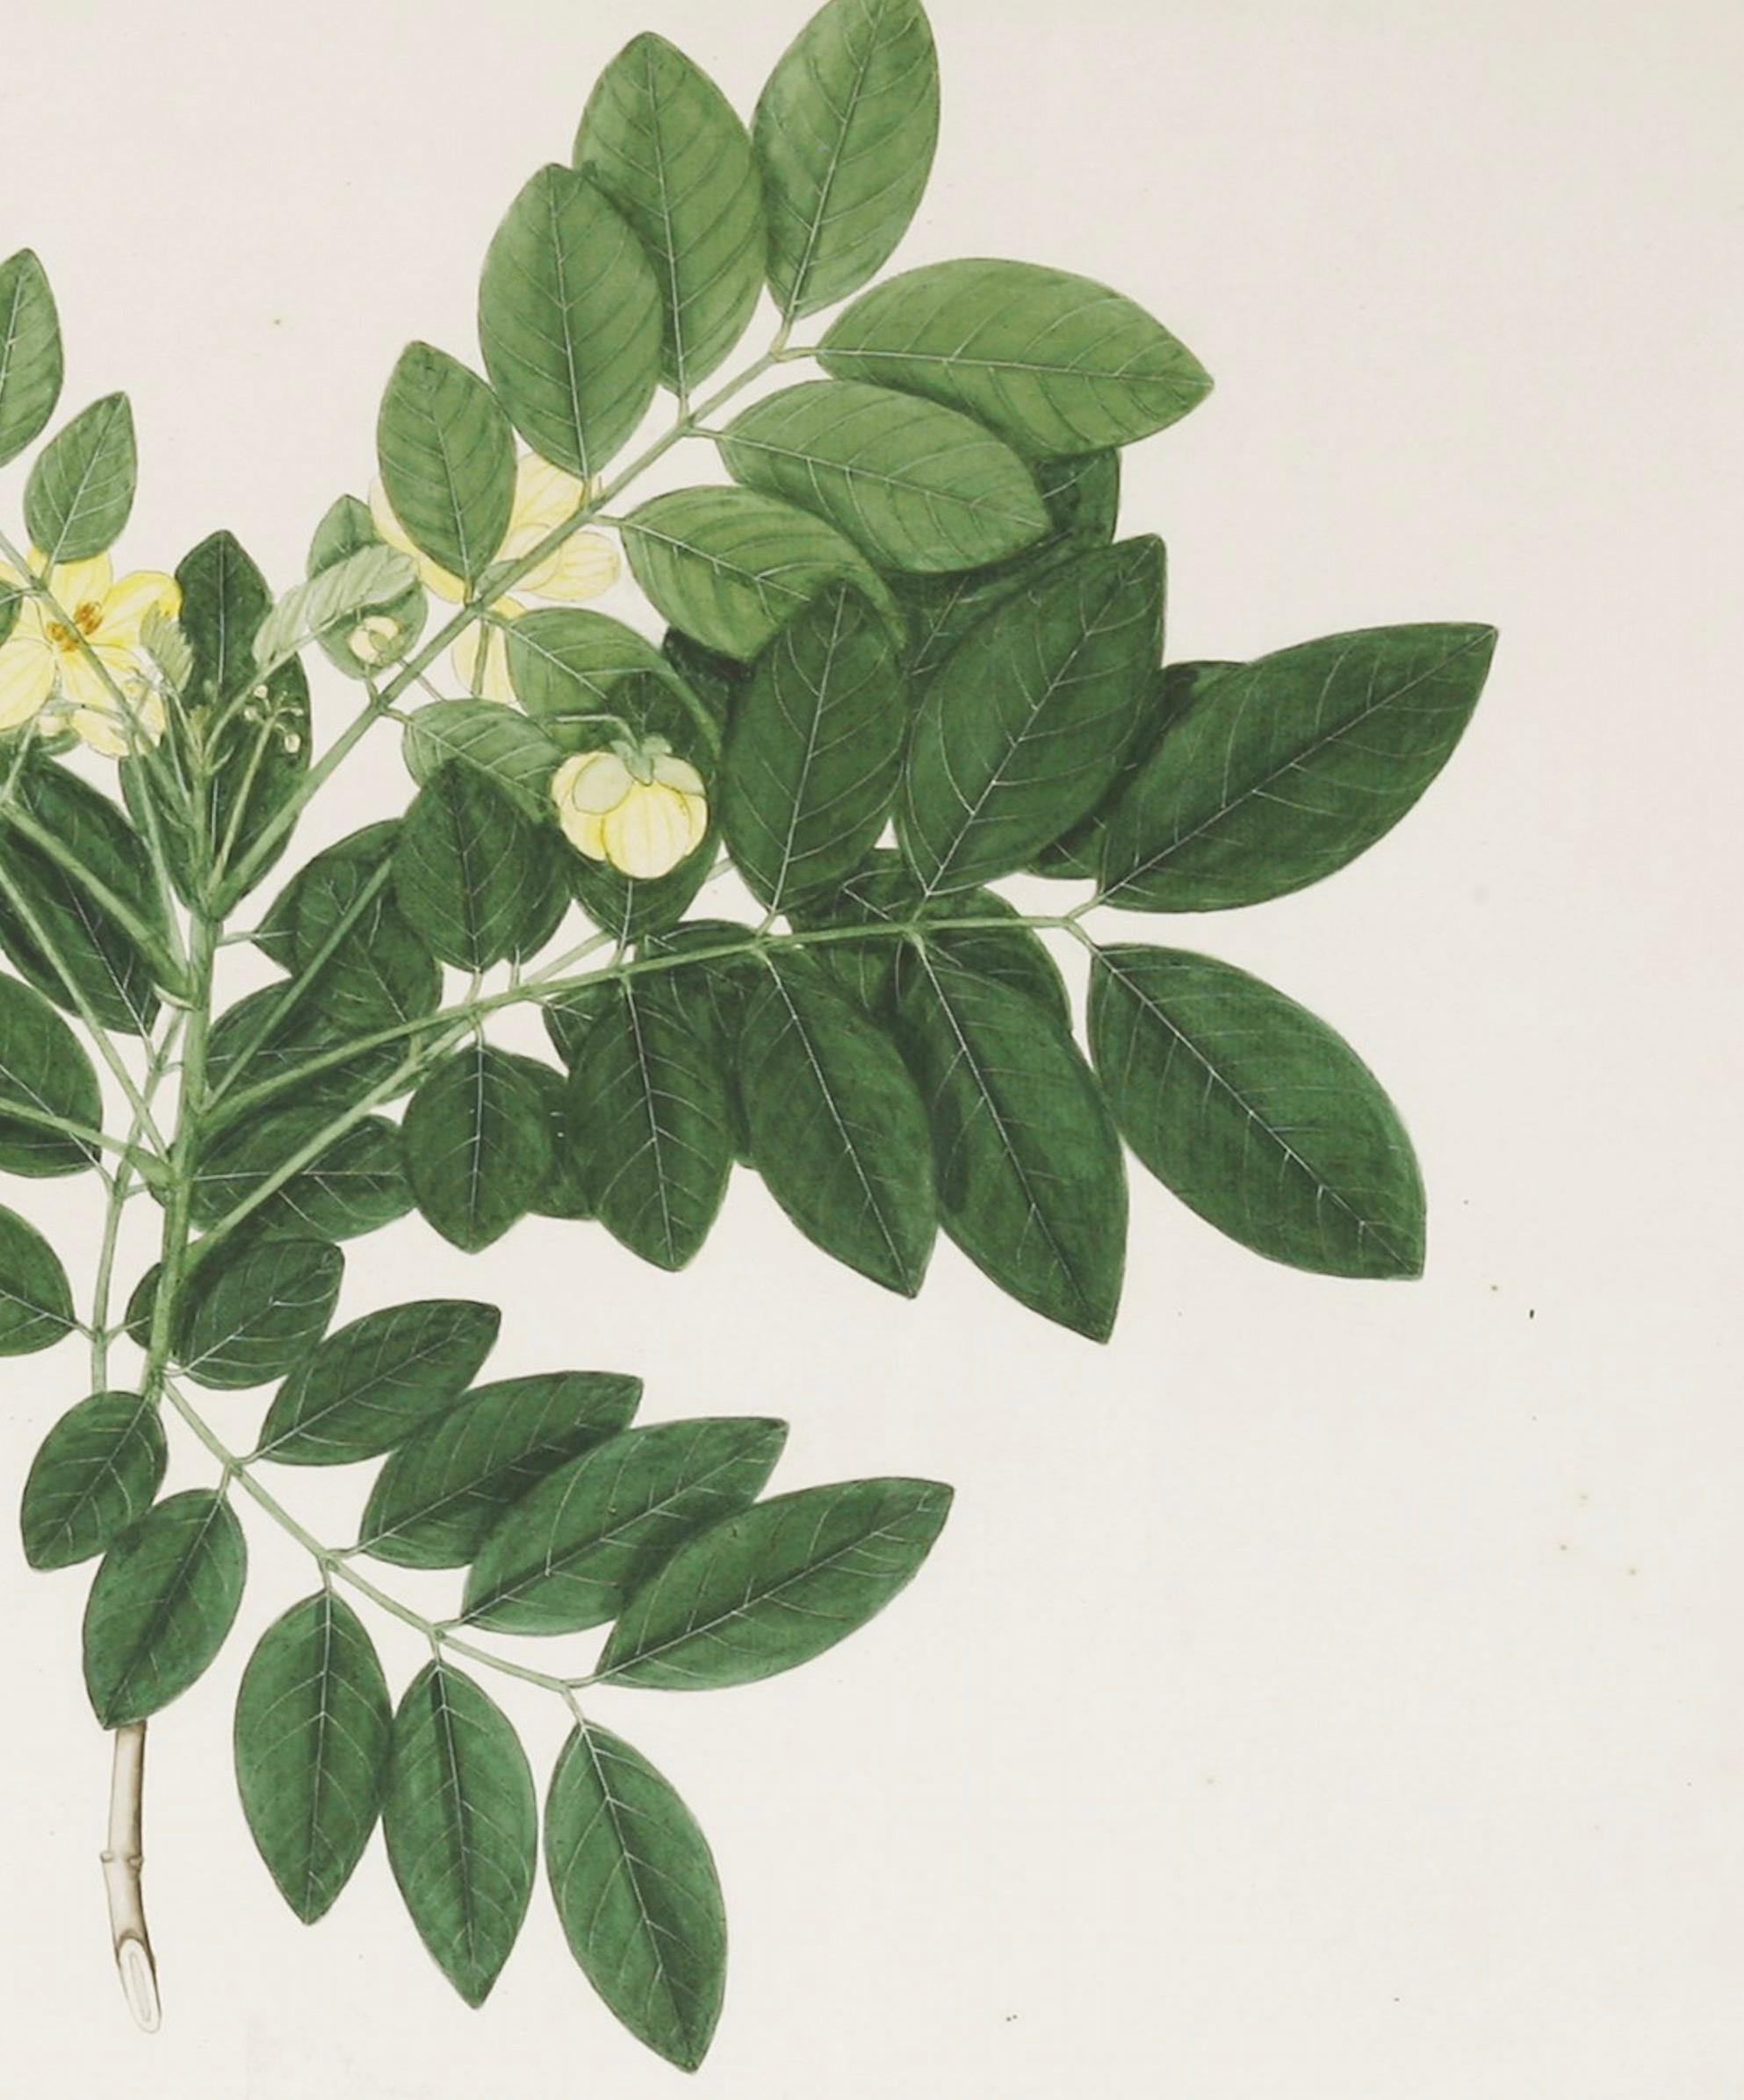 Ein schönes Aquarell aus dem späten 18. und frühen 19. Jahrhundert, das einen indischen Strauch mit gelben Blüten zeigt.

Von Janet Dick. Auf der Rückseite befindet sich ein Papieretikett mit der Aufschrift 